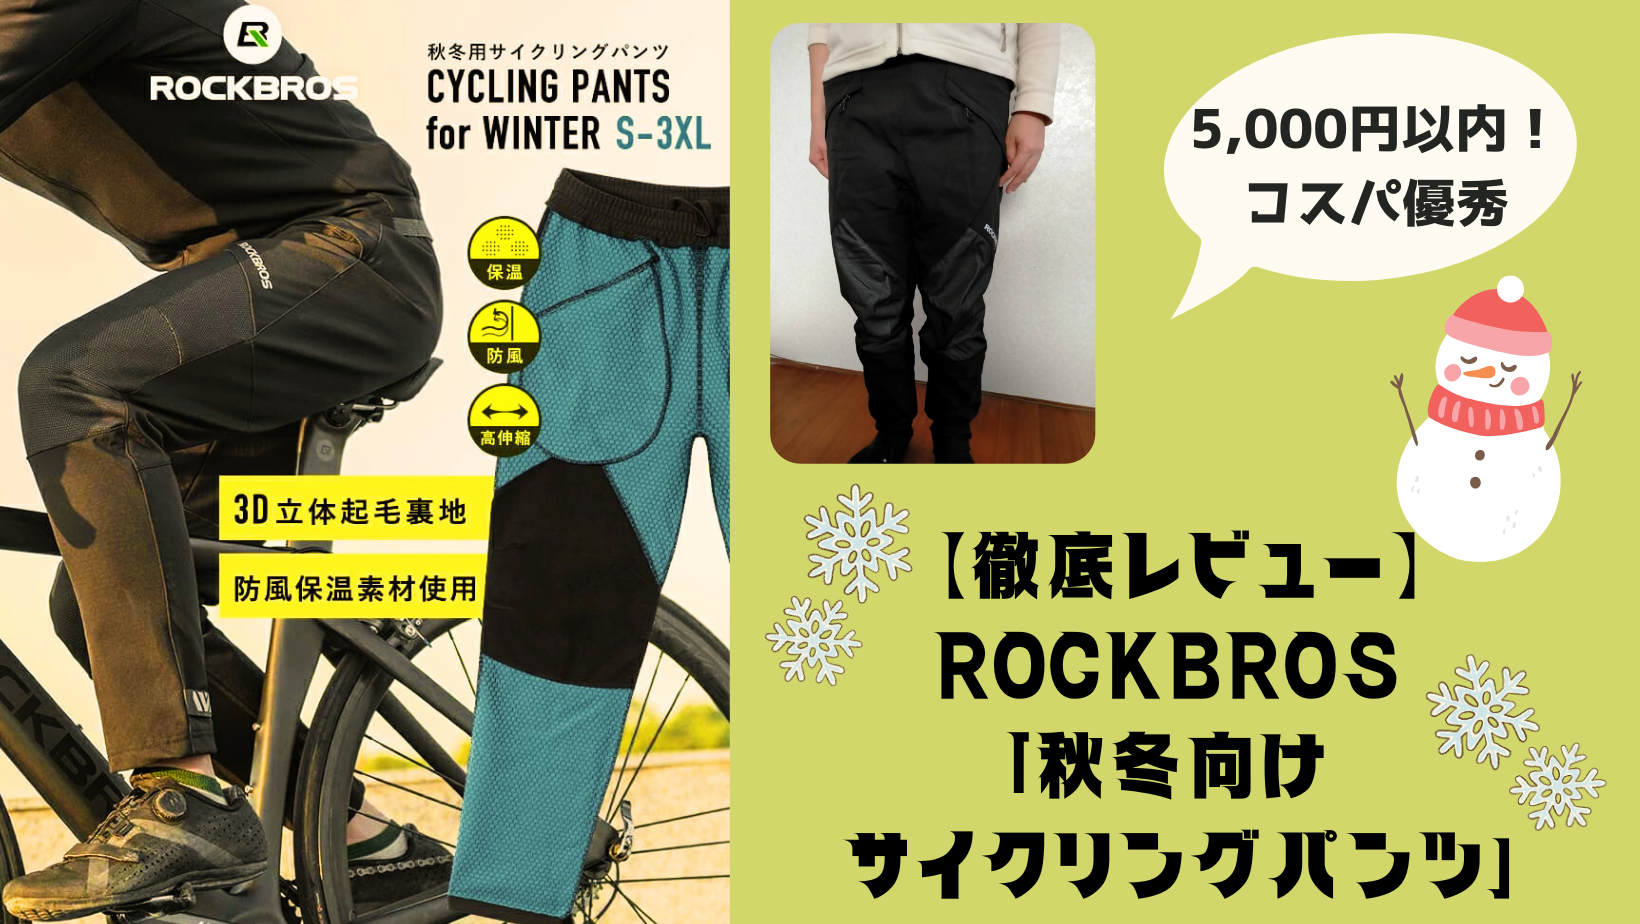 【徹底レビュー】ROCKBROS 「秋冬向け サイクリングパンツ」は極寒トレに最適